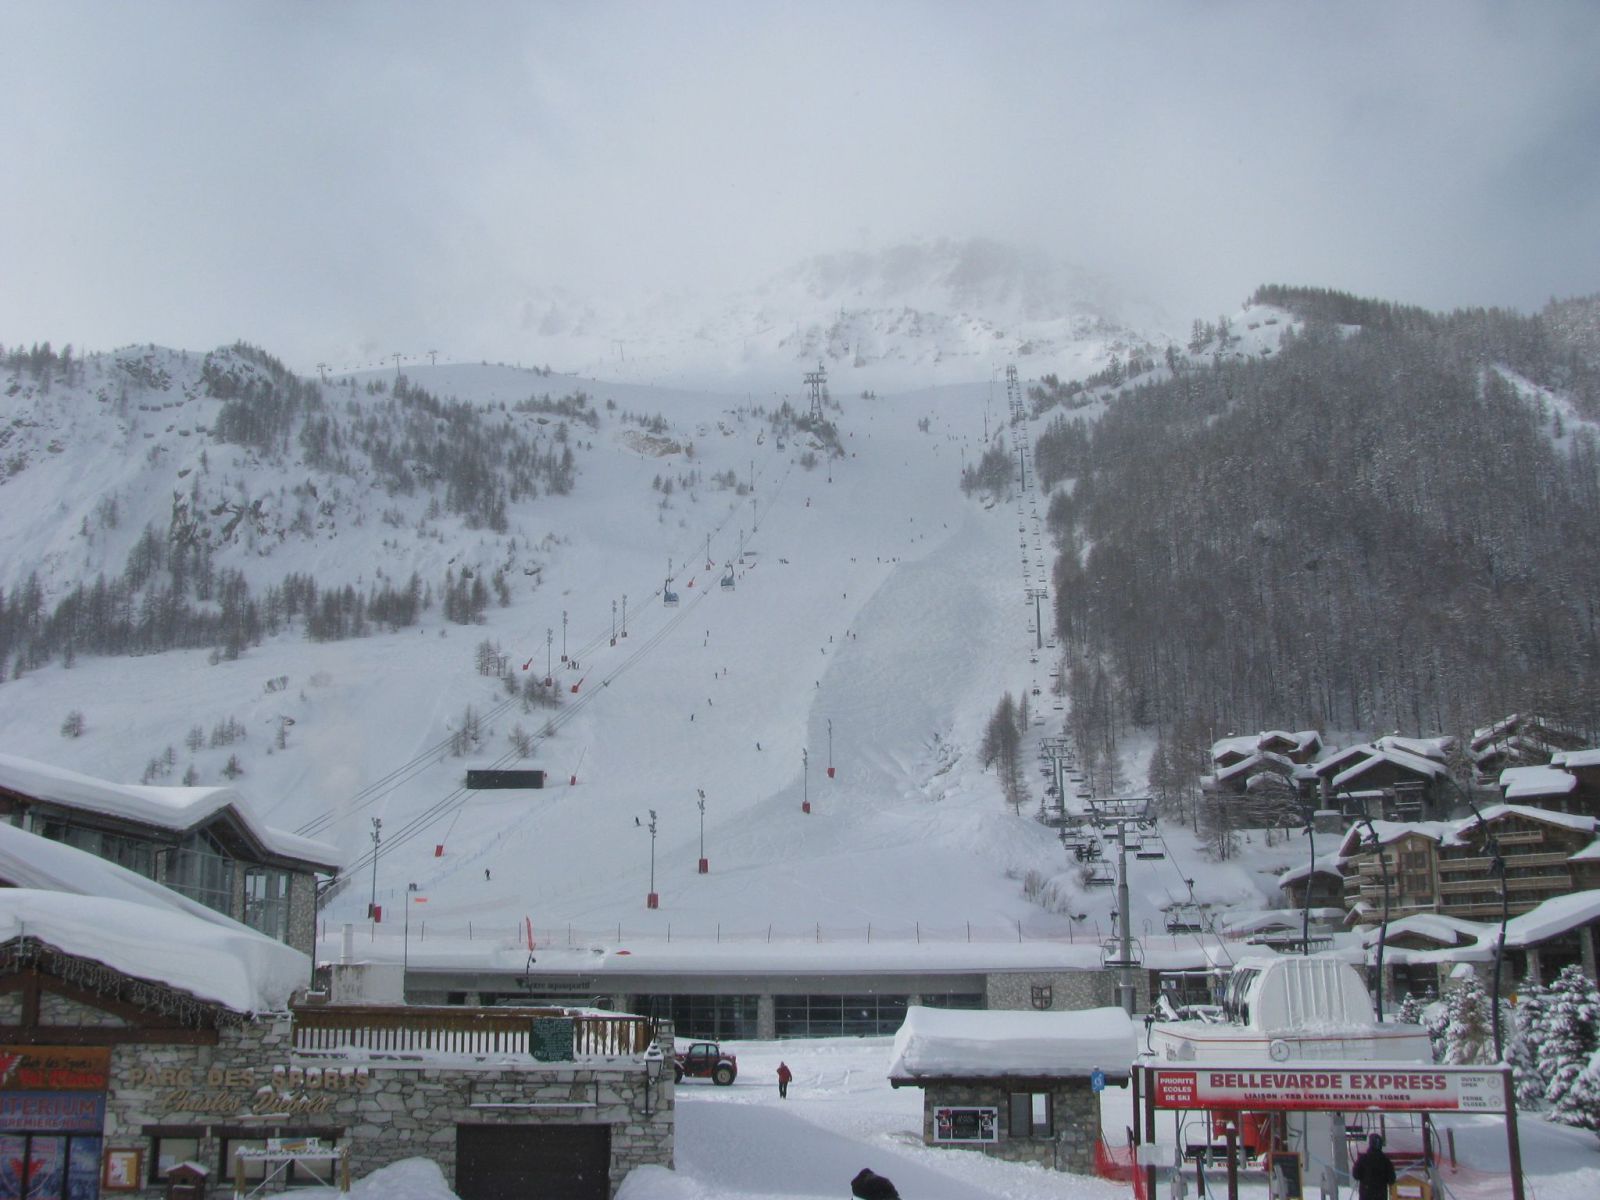 A Face nebű olimpiai fekete pálya Val d'Isére-ben, ahol volt az 1992. évi téli olimpia super-óriás-műesiklása